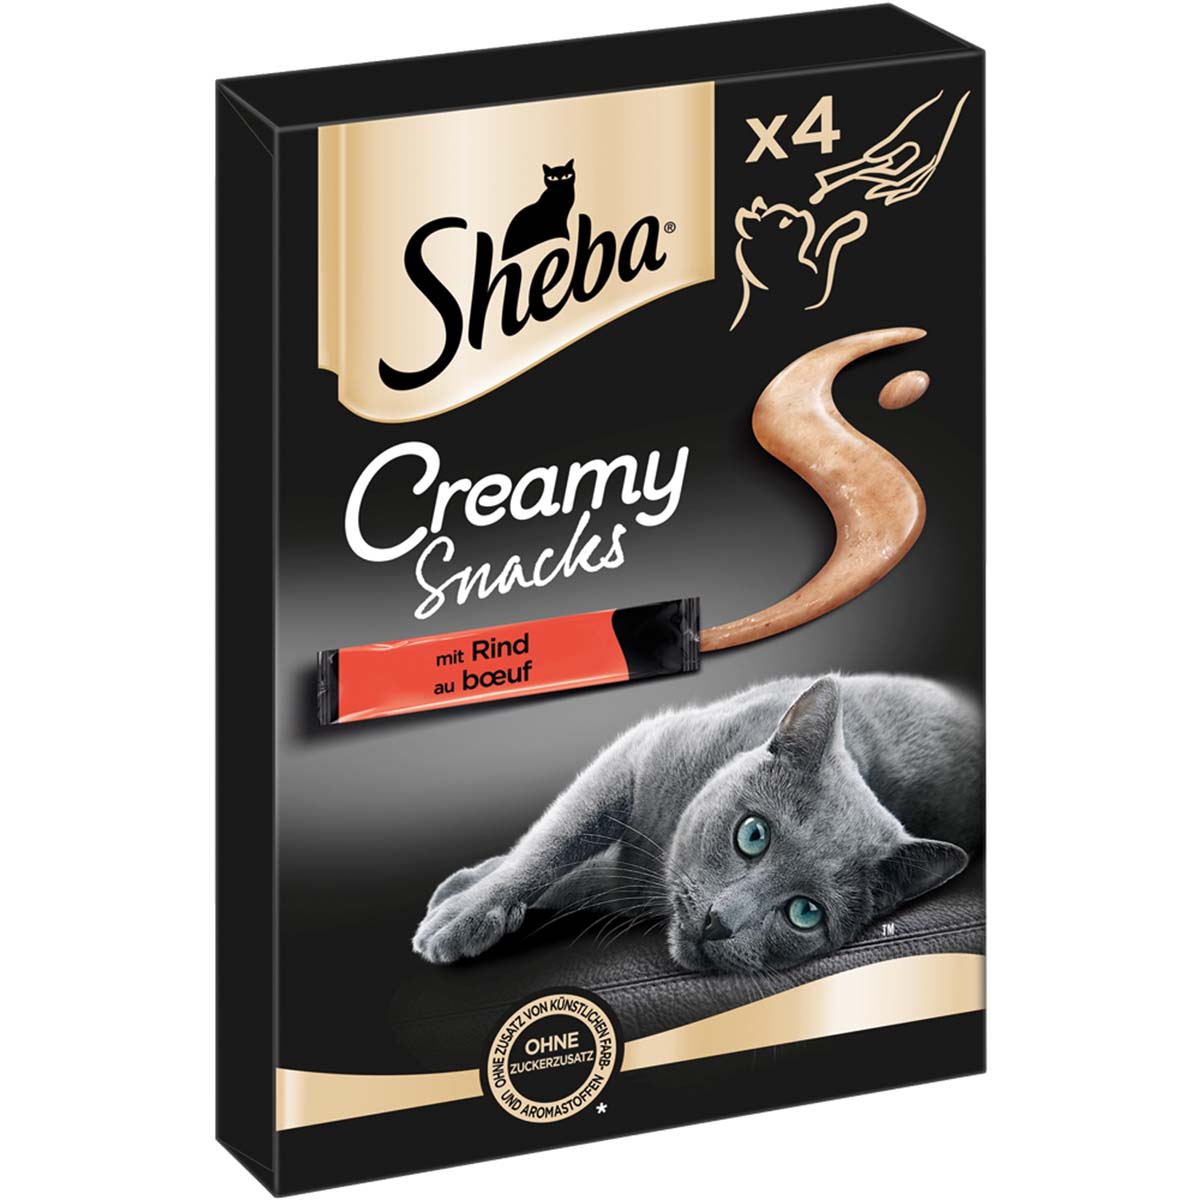 SHEBA® Creamy Snacks mit Rind 4x12g von Sheba